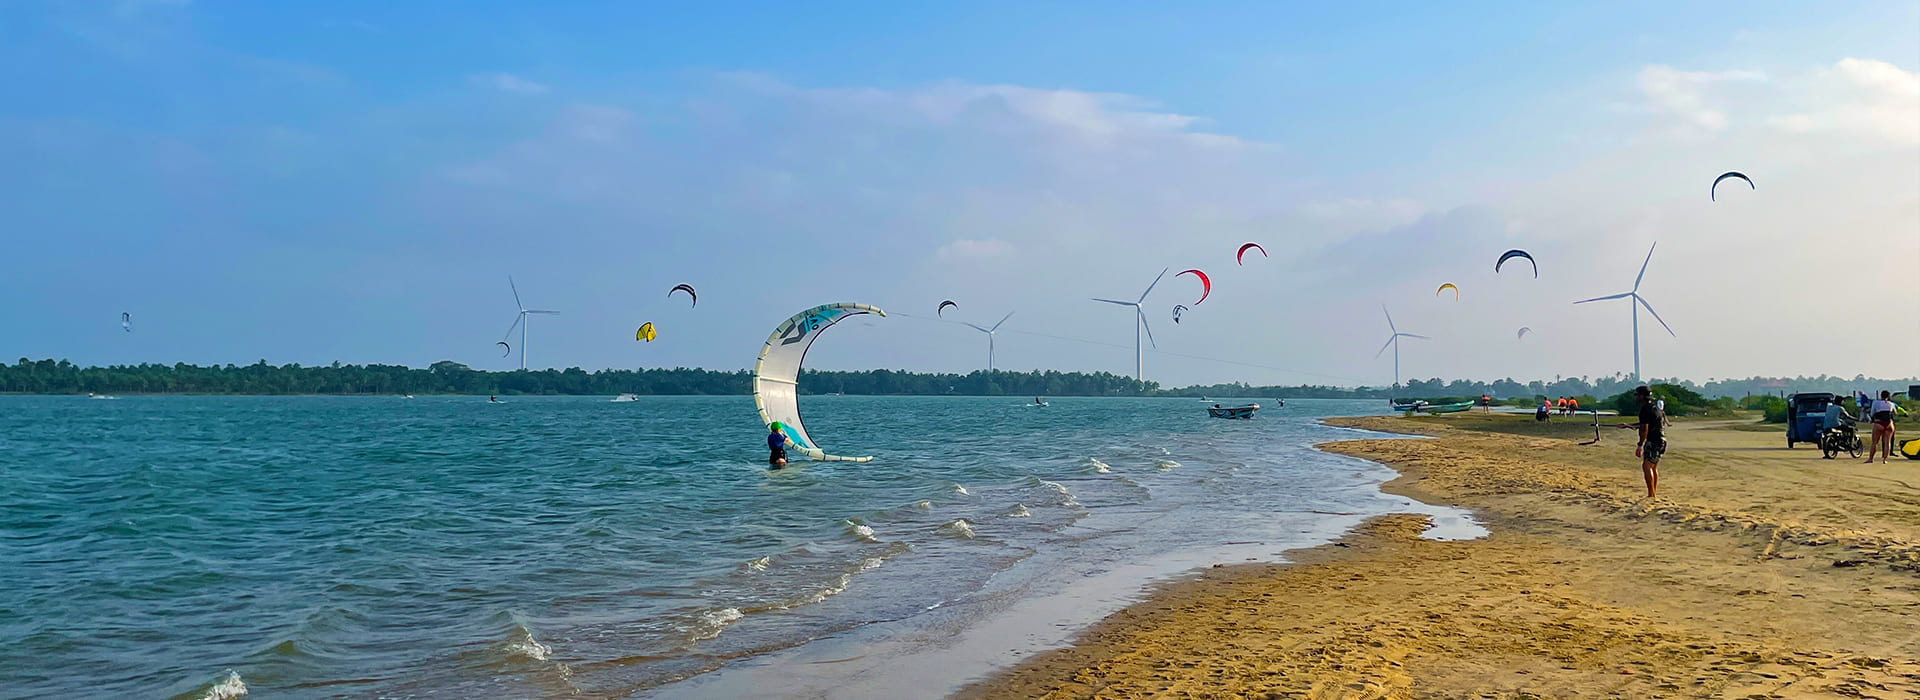 Kitesurfing in Sri Lanka